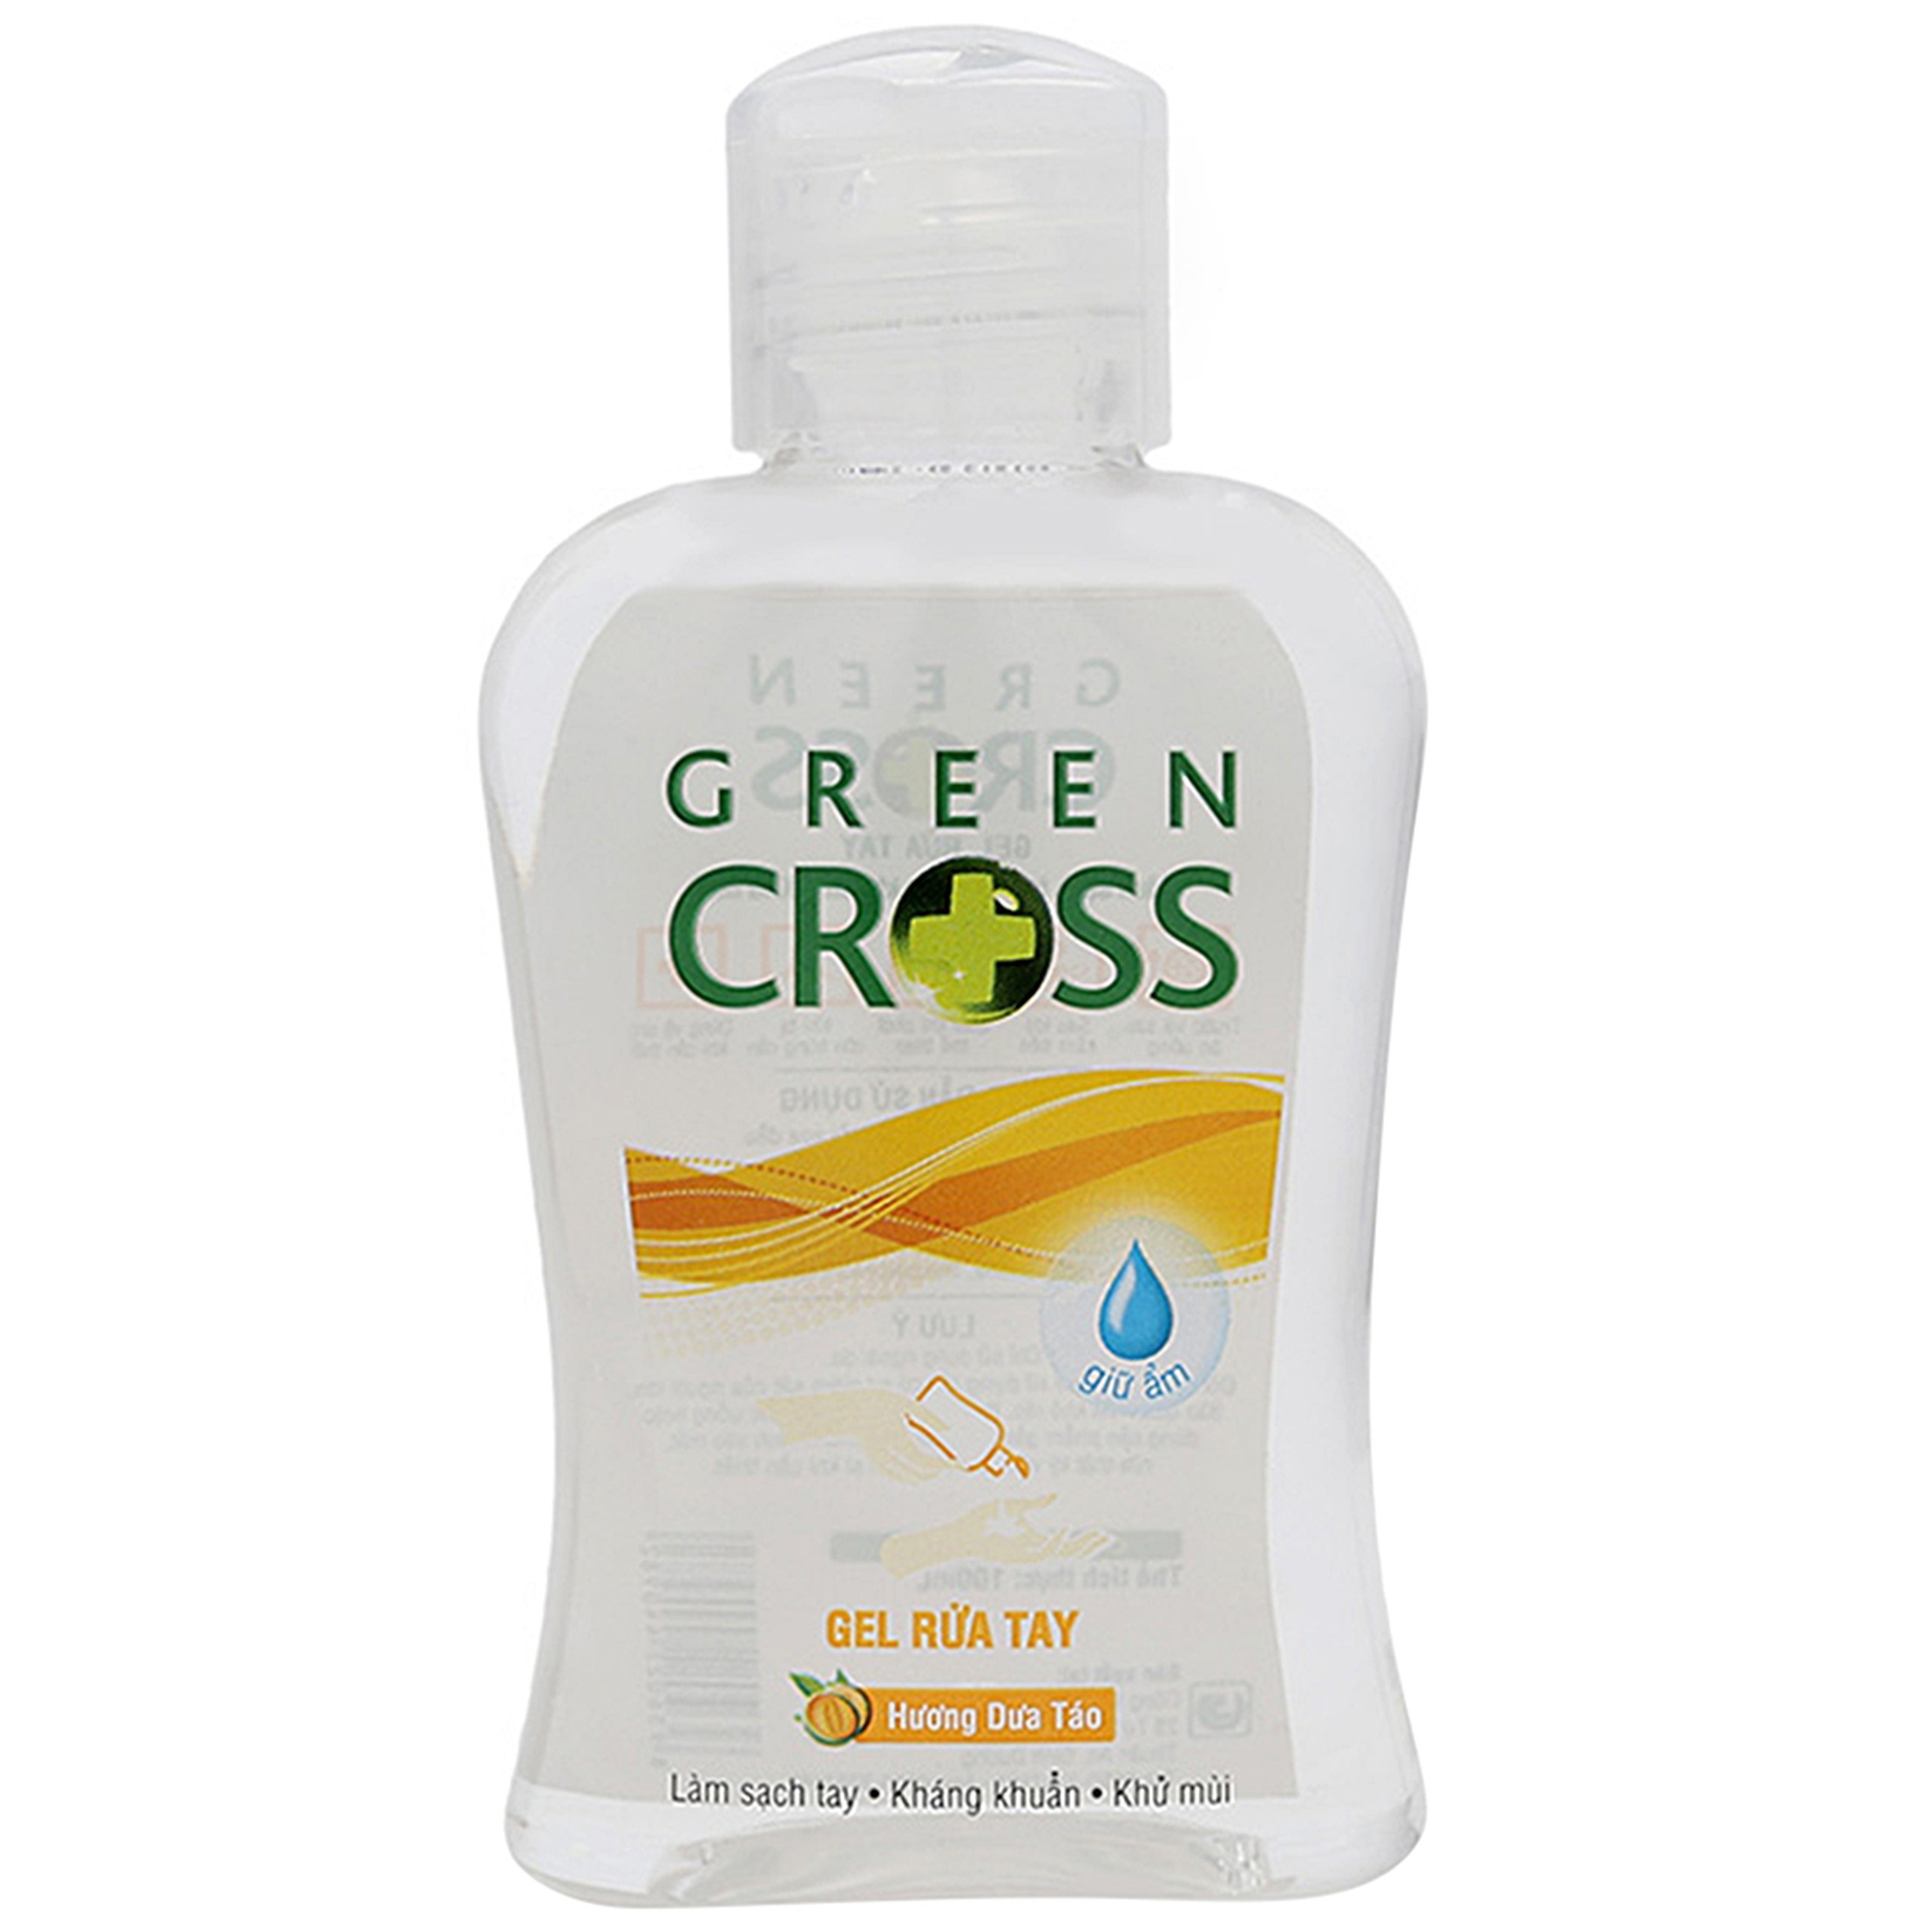 Gel rửa tay Green Cross hương dưa táo làm sạch tay, kháng khuẩn, khử mùi (100ml)